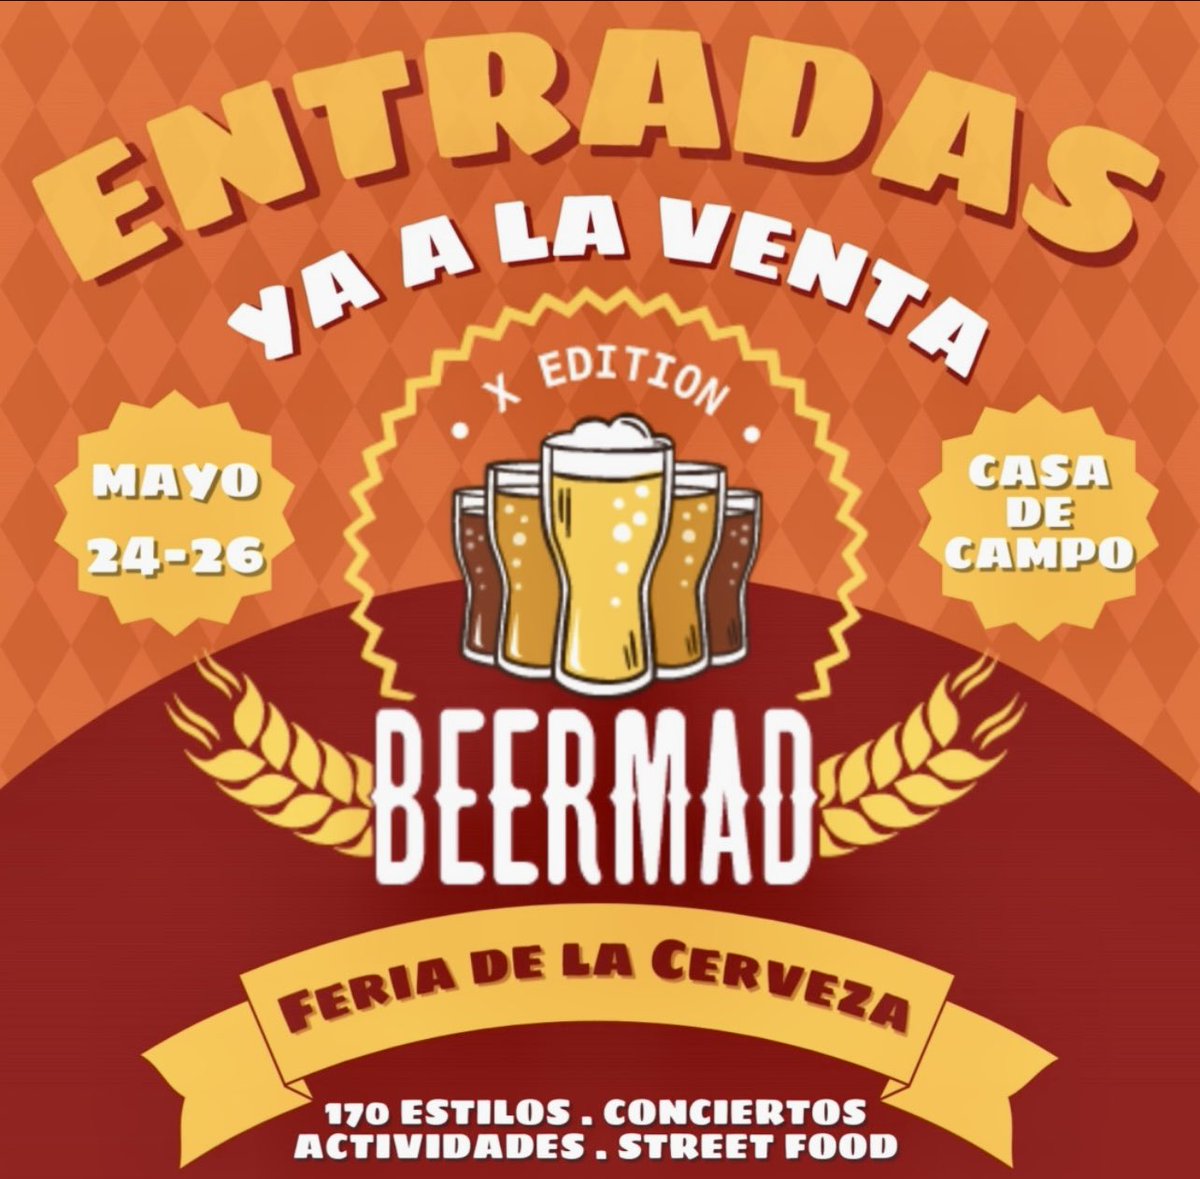 🍺 La Charanga Beer #Cervezaartesanal de Torrejón de Ardoz (Madrid) con sus elaboraciones estarán en la X Edición de #beermad del 24 al 26
de mayo
#cervezartesanal #cervezademadrid
#birraartesanal #somoscerveceros #madrid #beermad2024 #beermad24 #ociomadrid
#planesmadrid